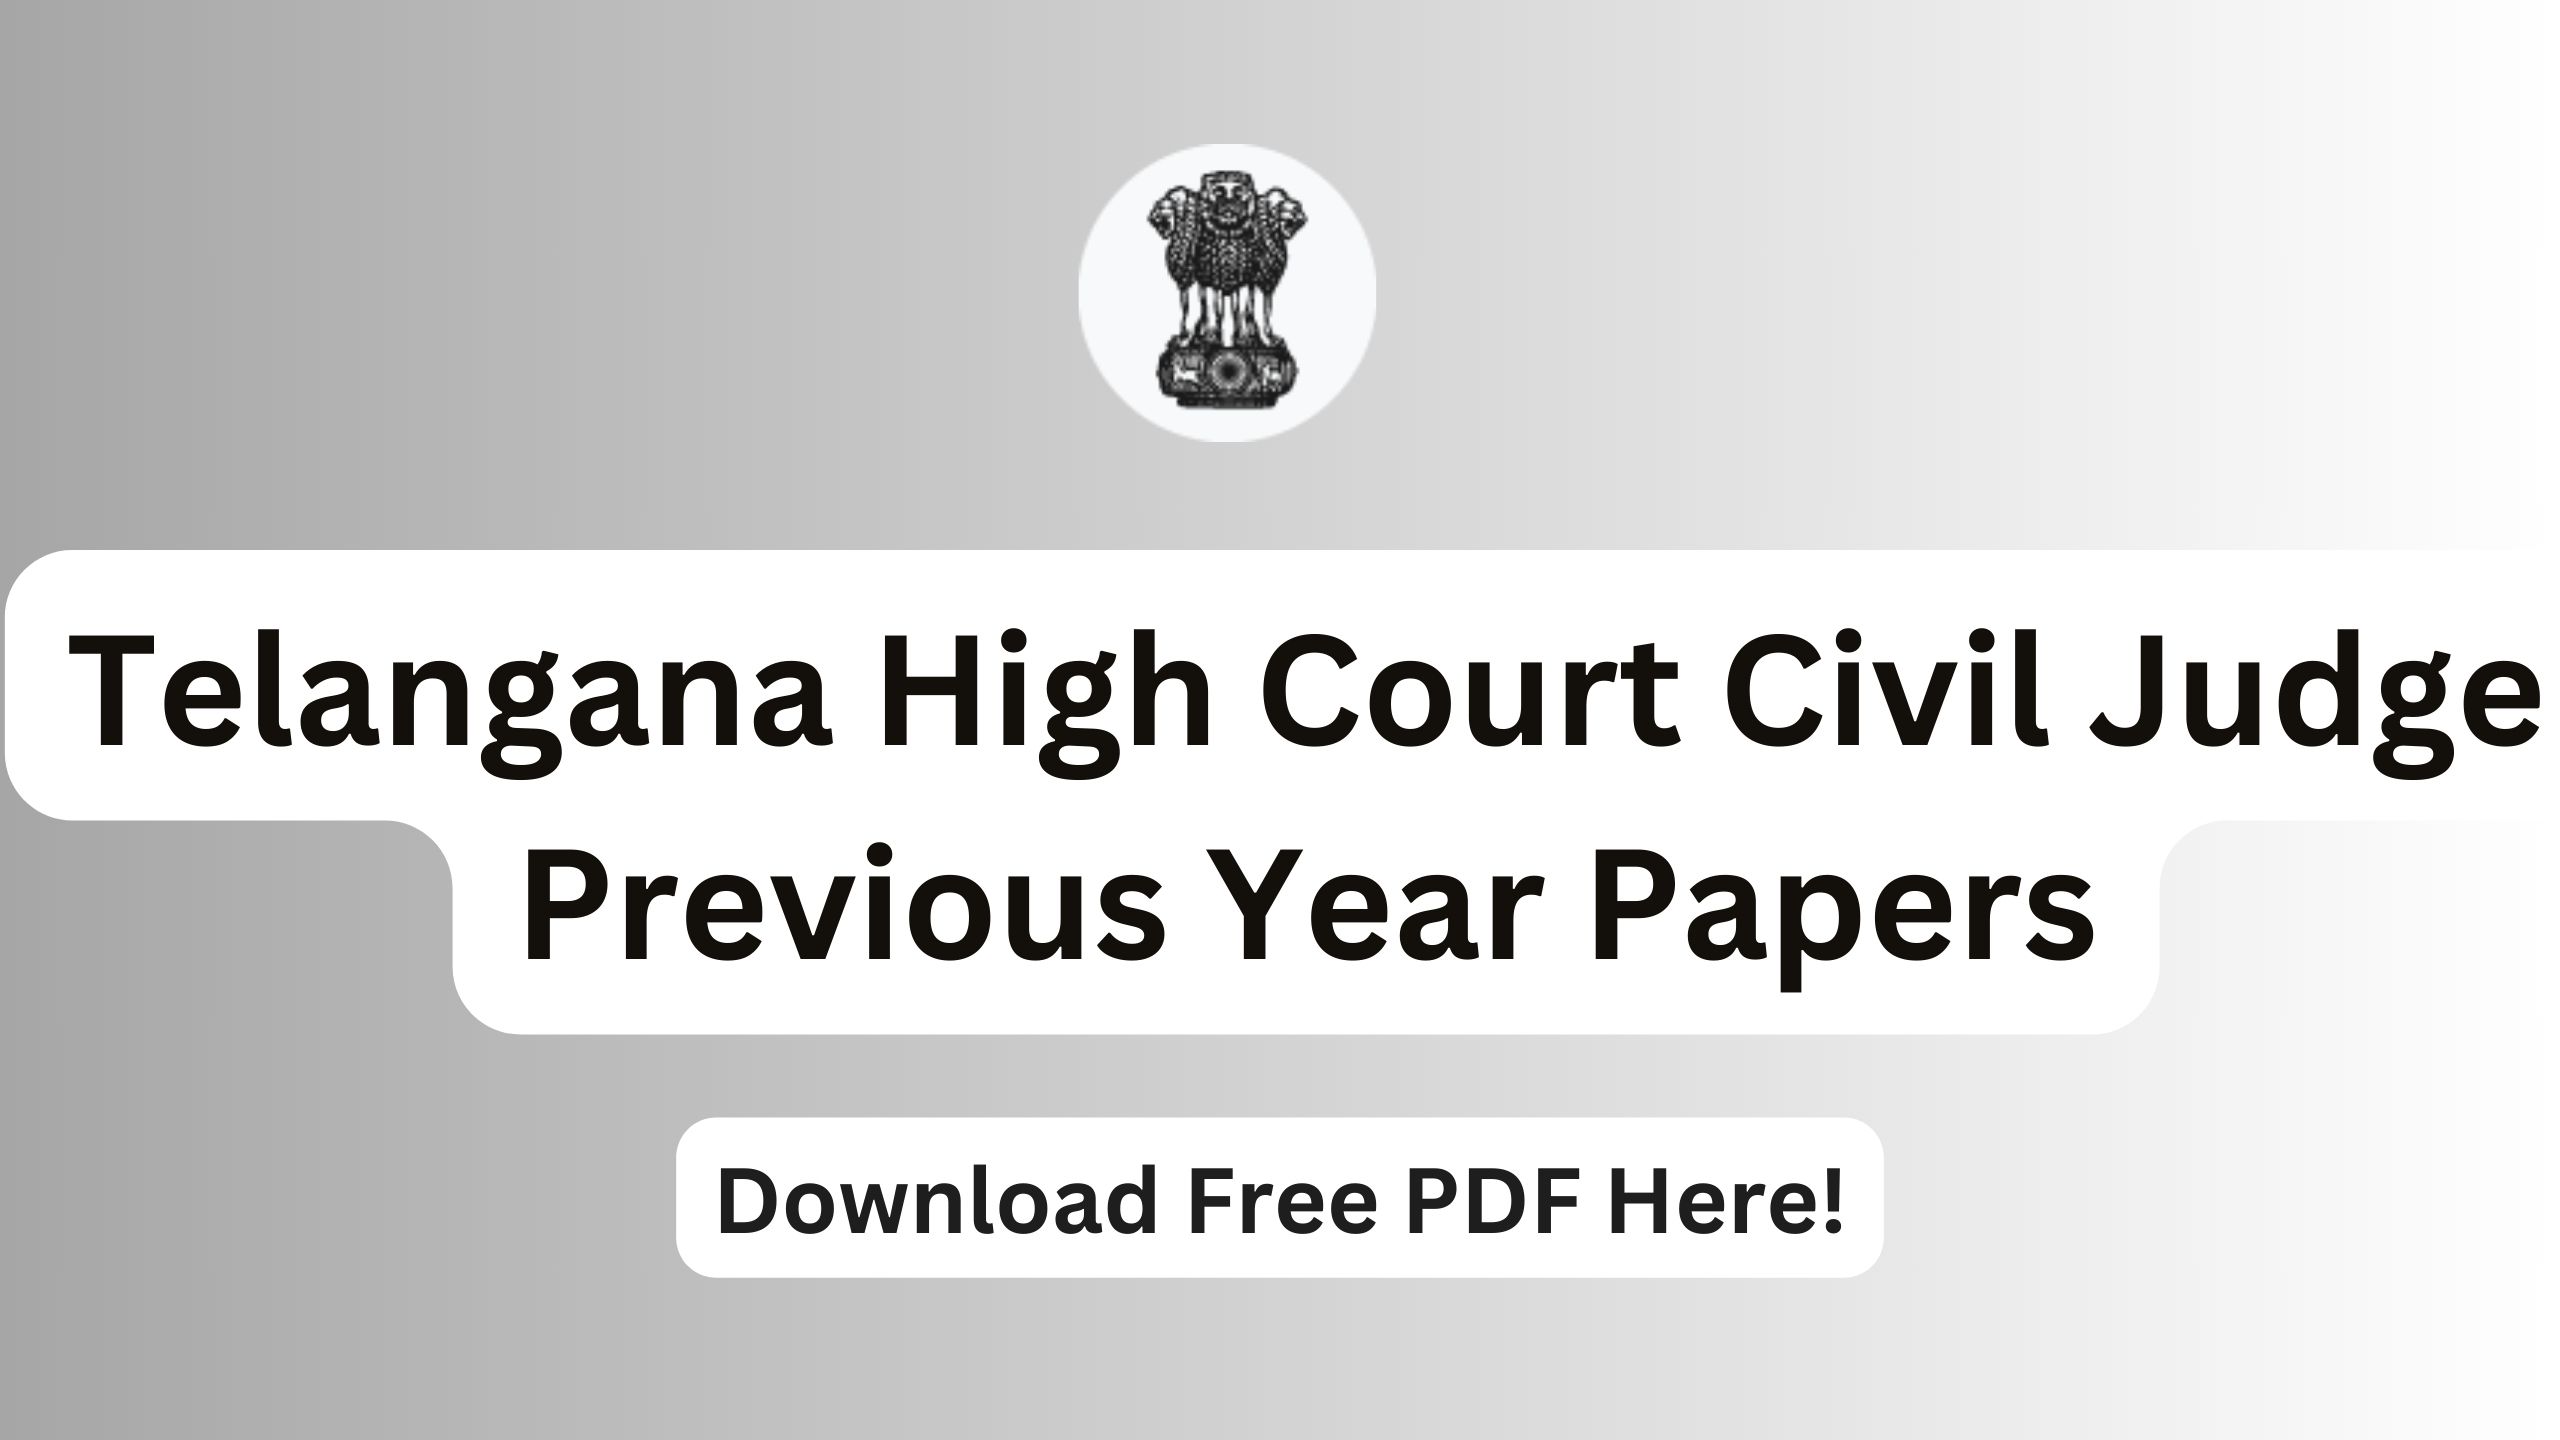 Telangana High Court Civil Judge Previous Year Papers, Download Free PDF!